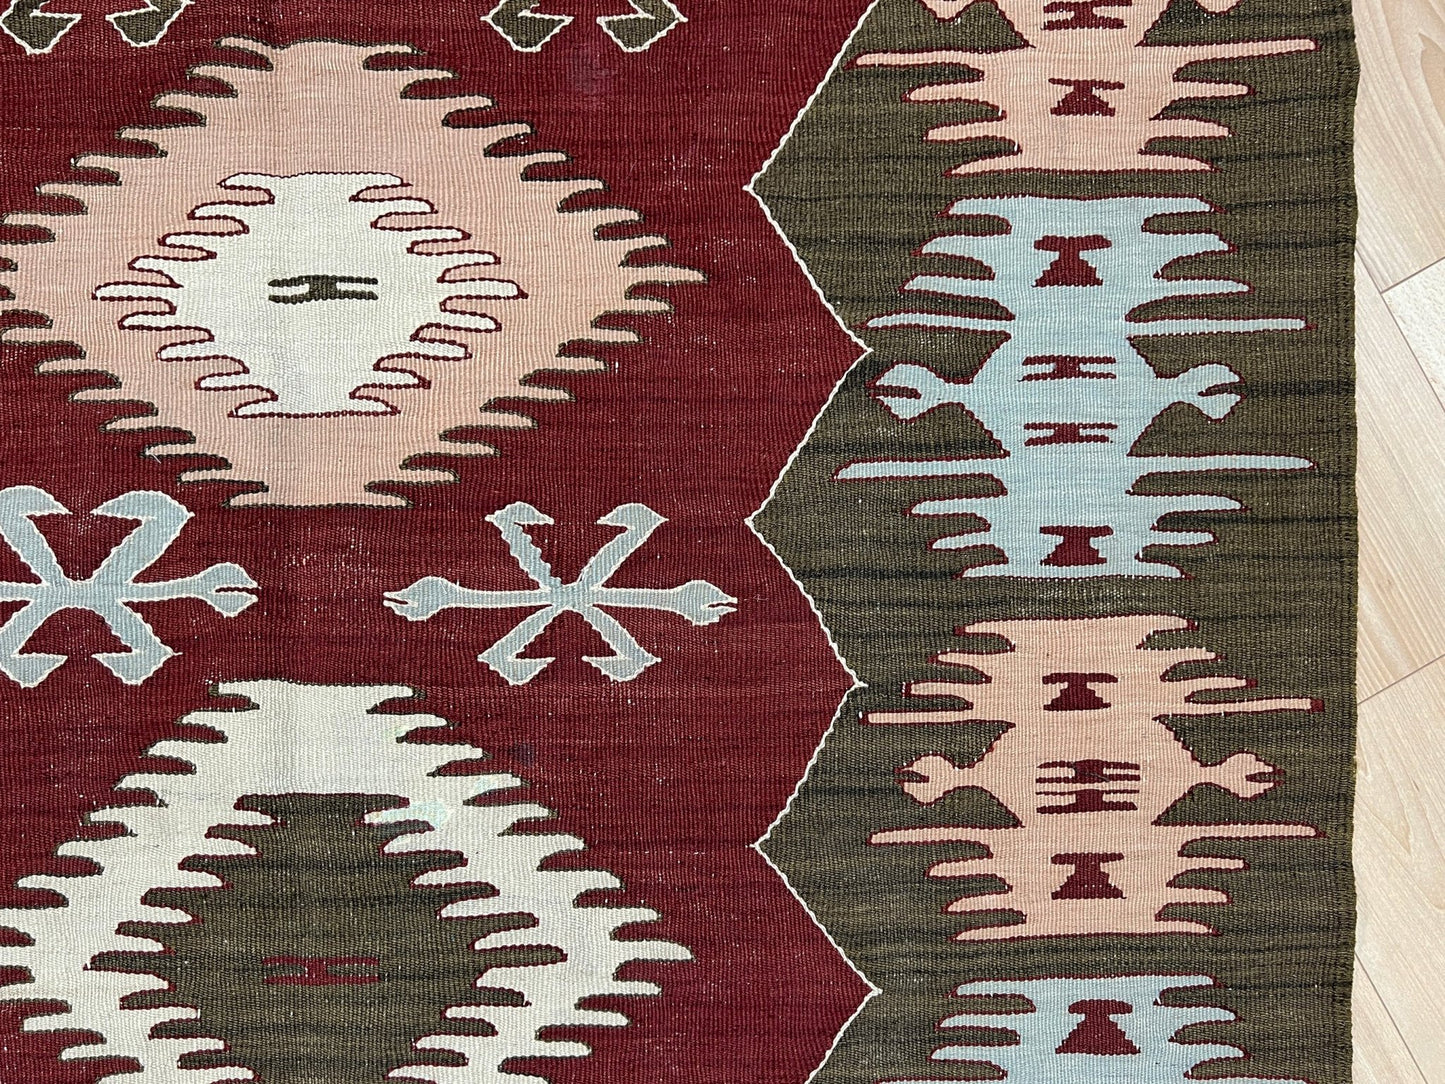 Afyon turkish kilim rug shop. Handmade wool  small flatweave rug shop san francisco bay area.